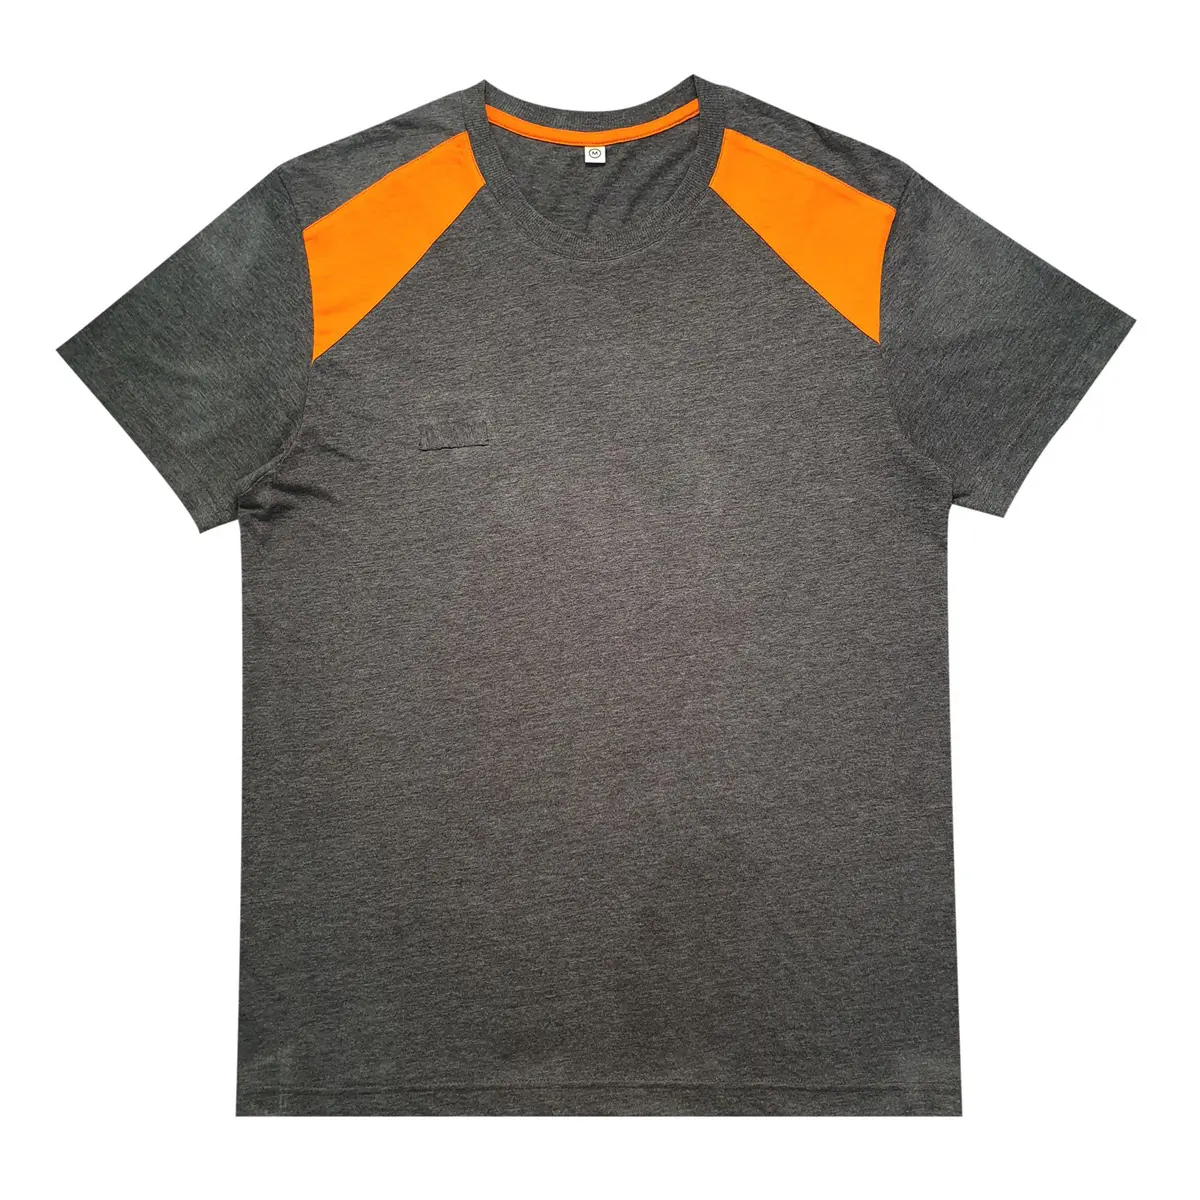 Moda erkek t-shirtü elbise yetişkinler için güvenilir tedarikçi % 100% pamuk siyah ve turuncu kısa kollu